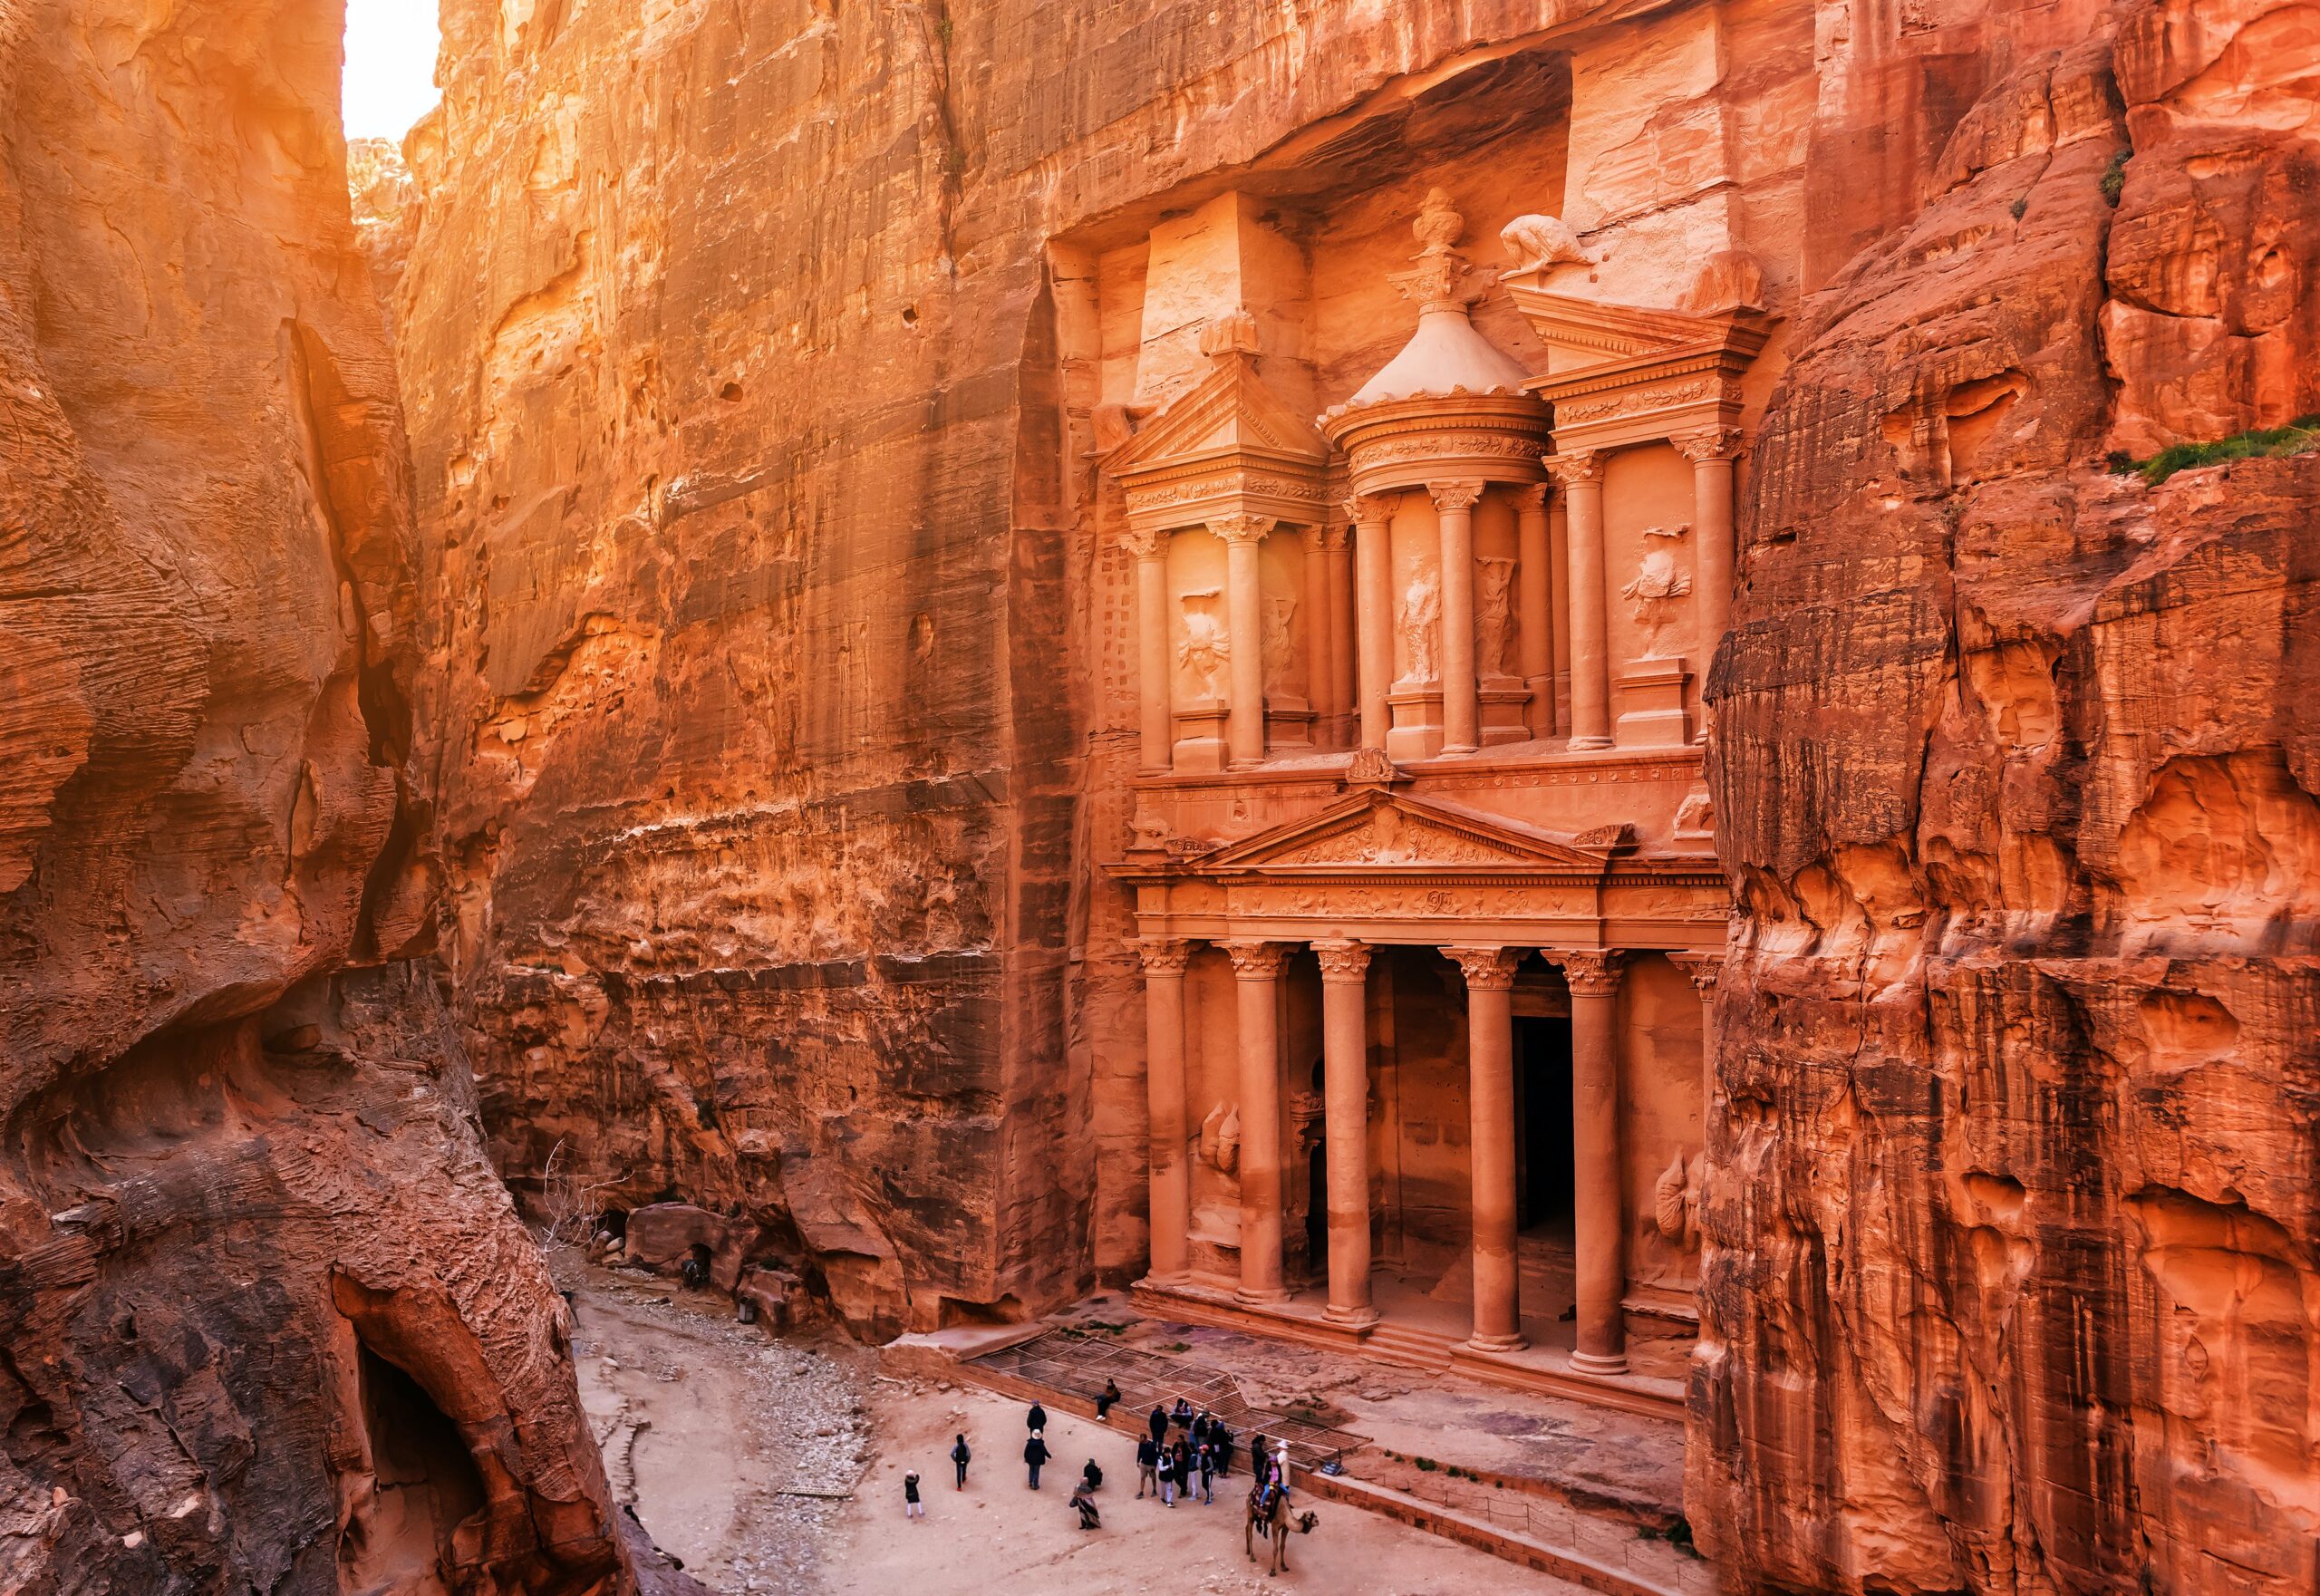 Vacanta in Iordania si Petra – 124 euro (zbor si cazare 5 nopti)